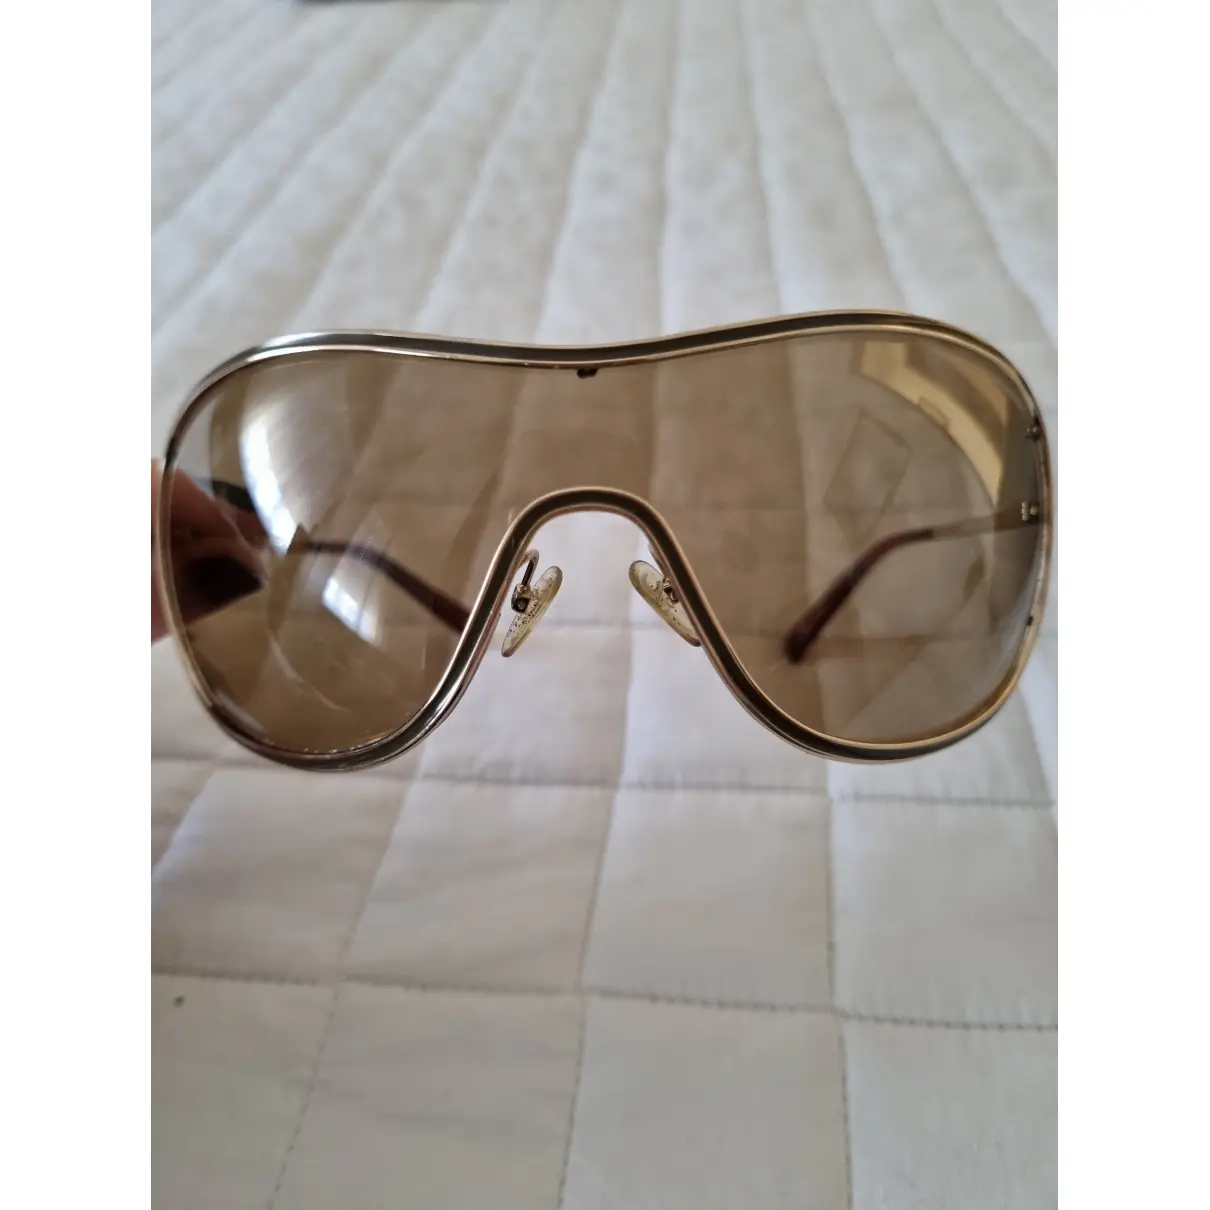 Buy Giorgio Armani Goggle glasses online